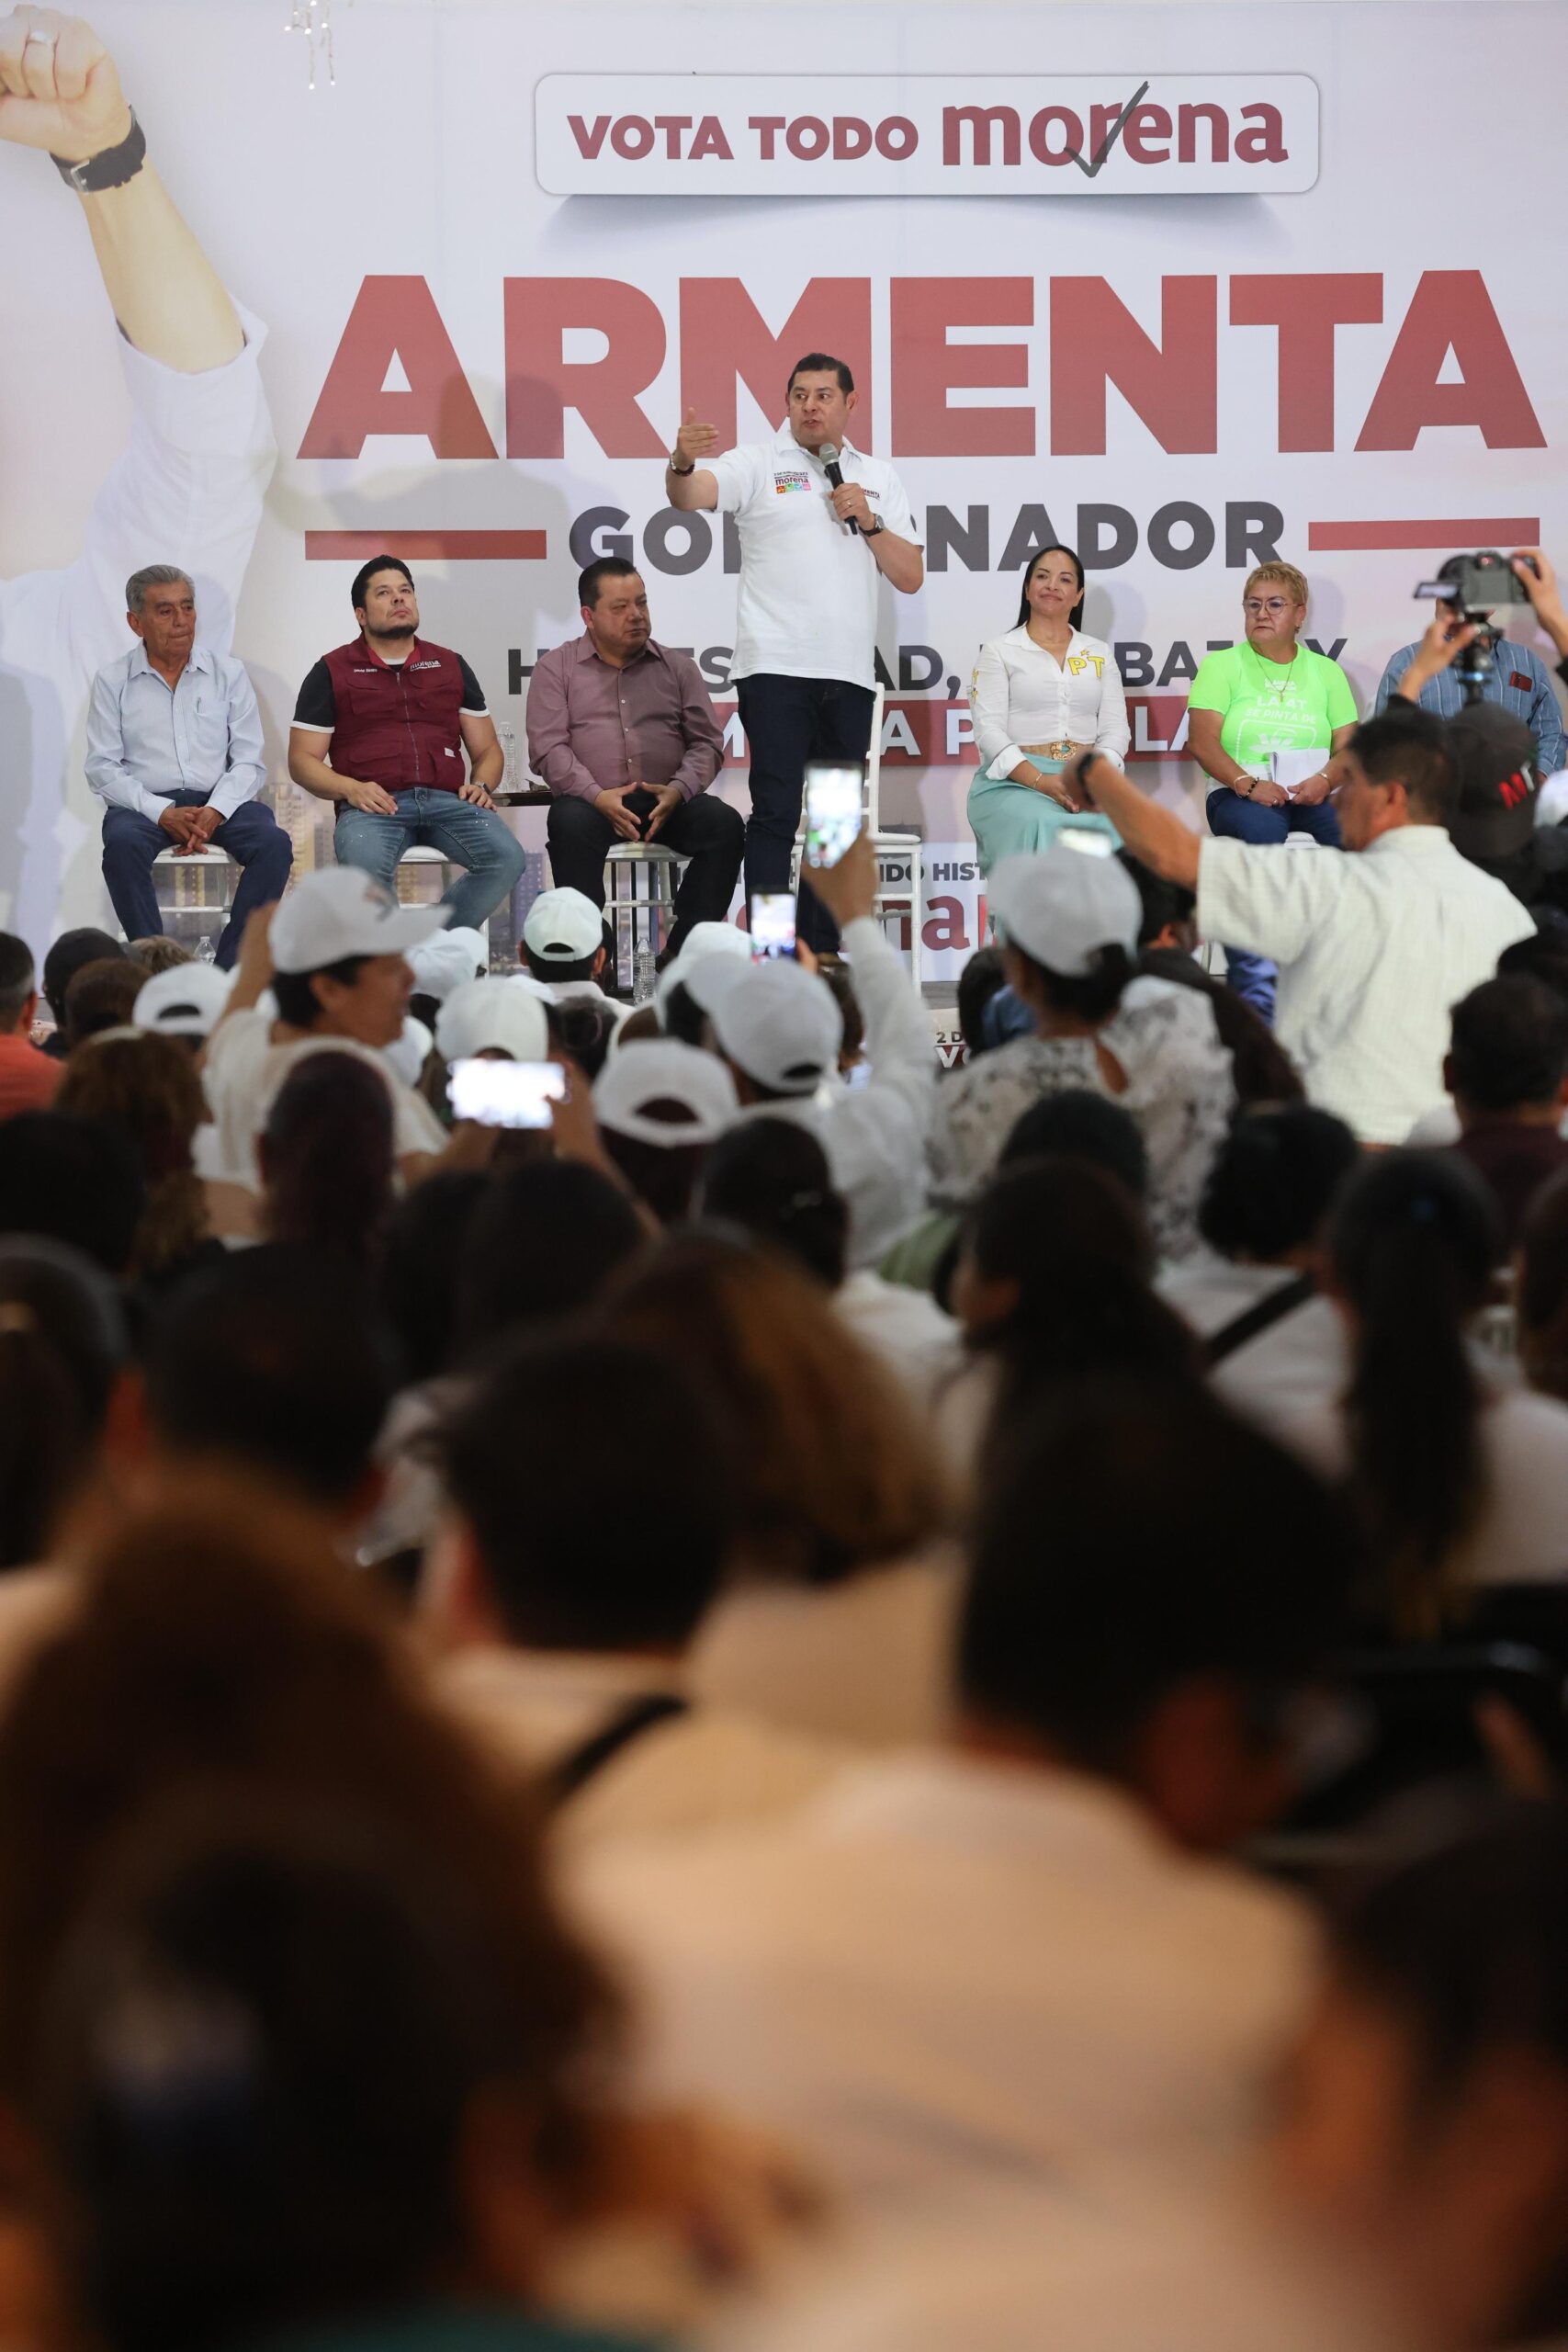 Alejandro Armenta promete revolucionar la salud pública en Puebla con innovadoras propuestas